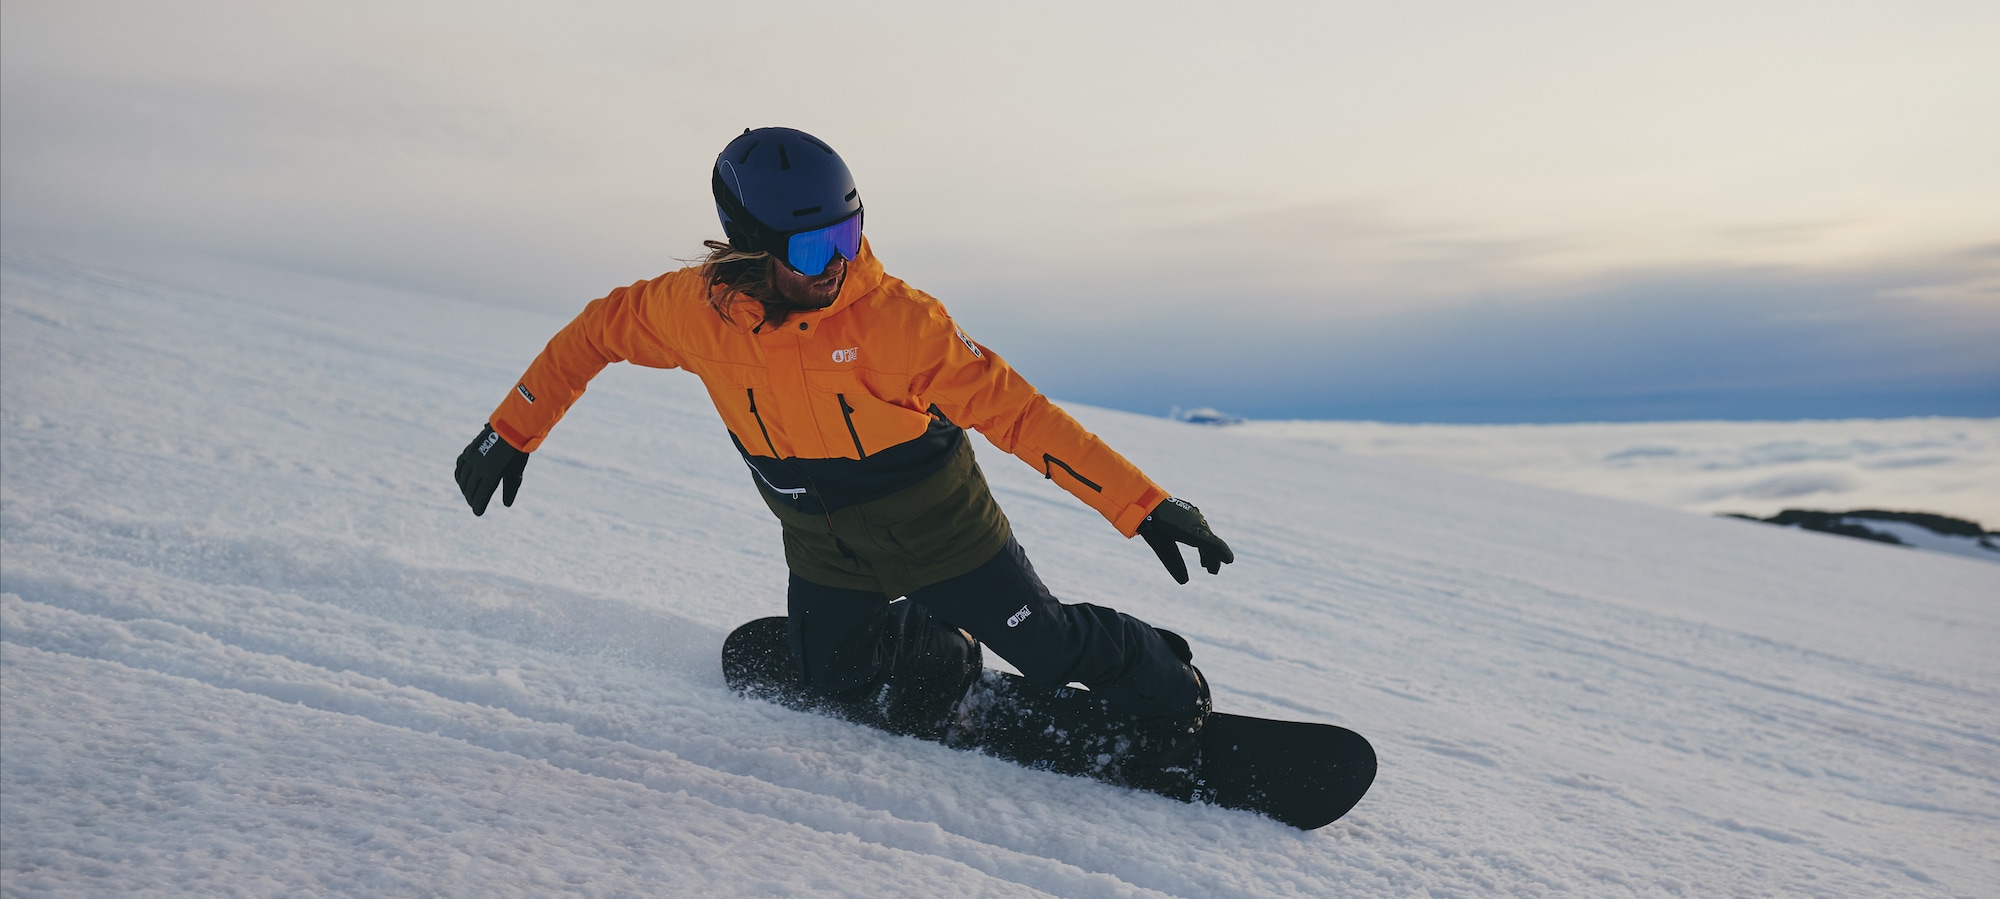 Toplo in varno skozi sezono Snowboard jakne